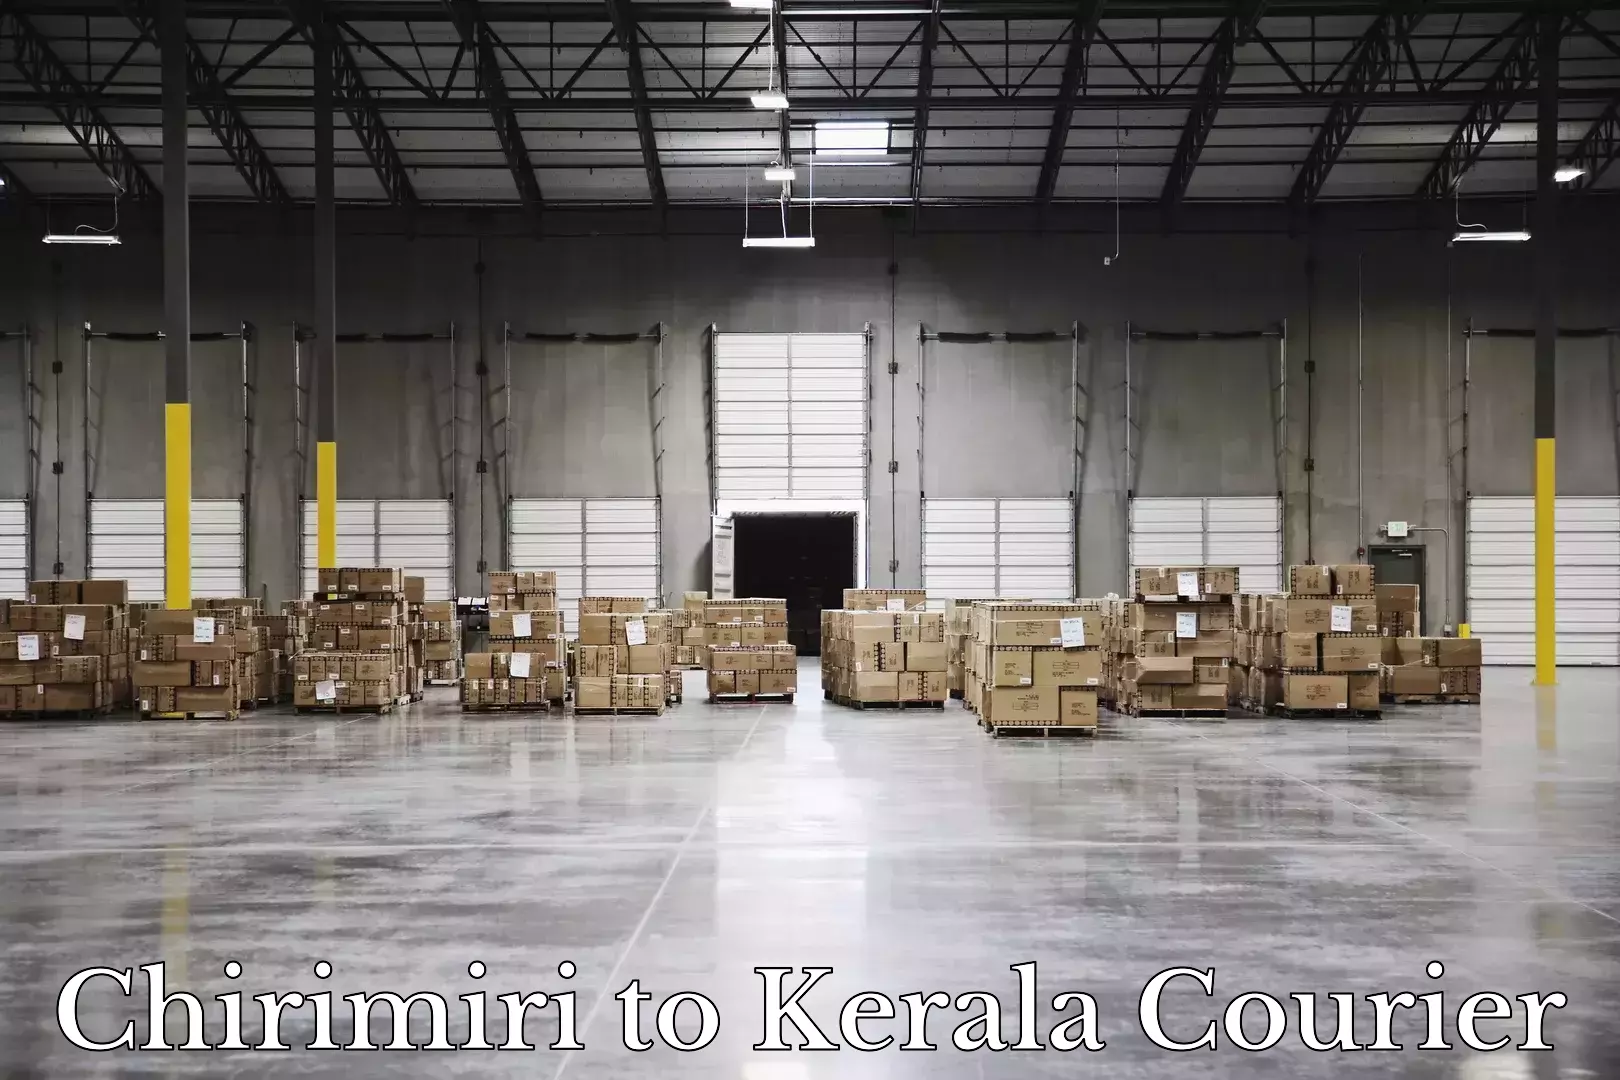 Luggage shipment tracking in Chirimiri to Kerala